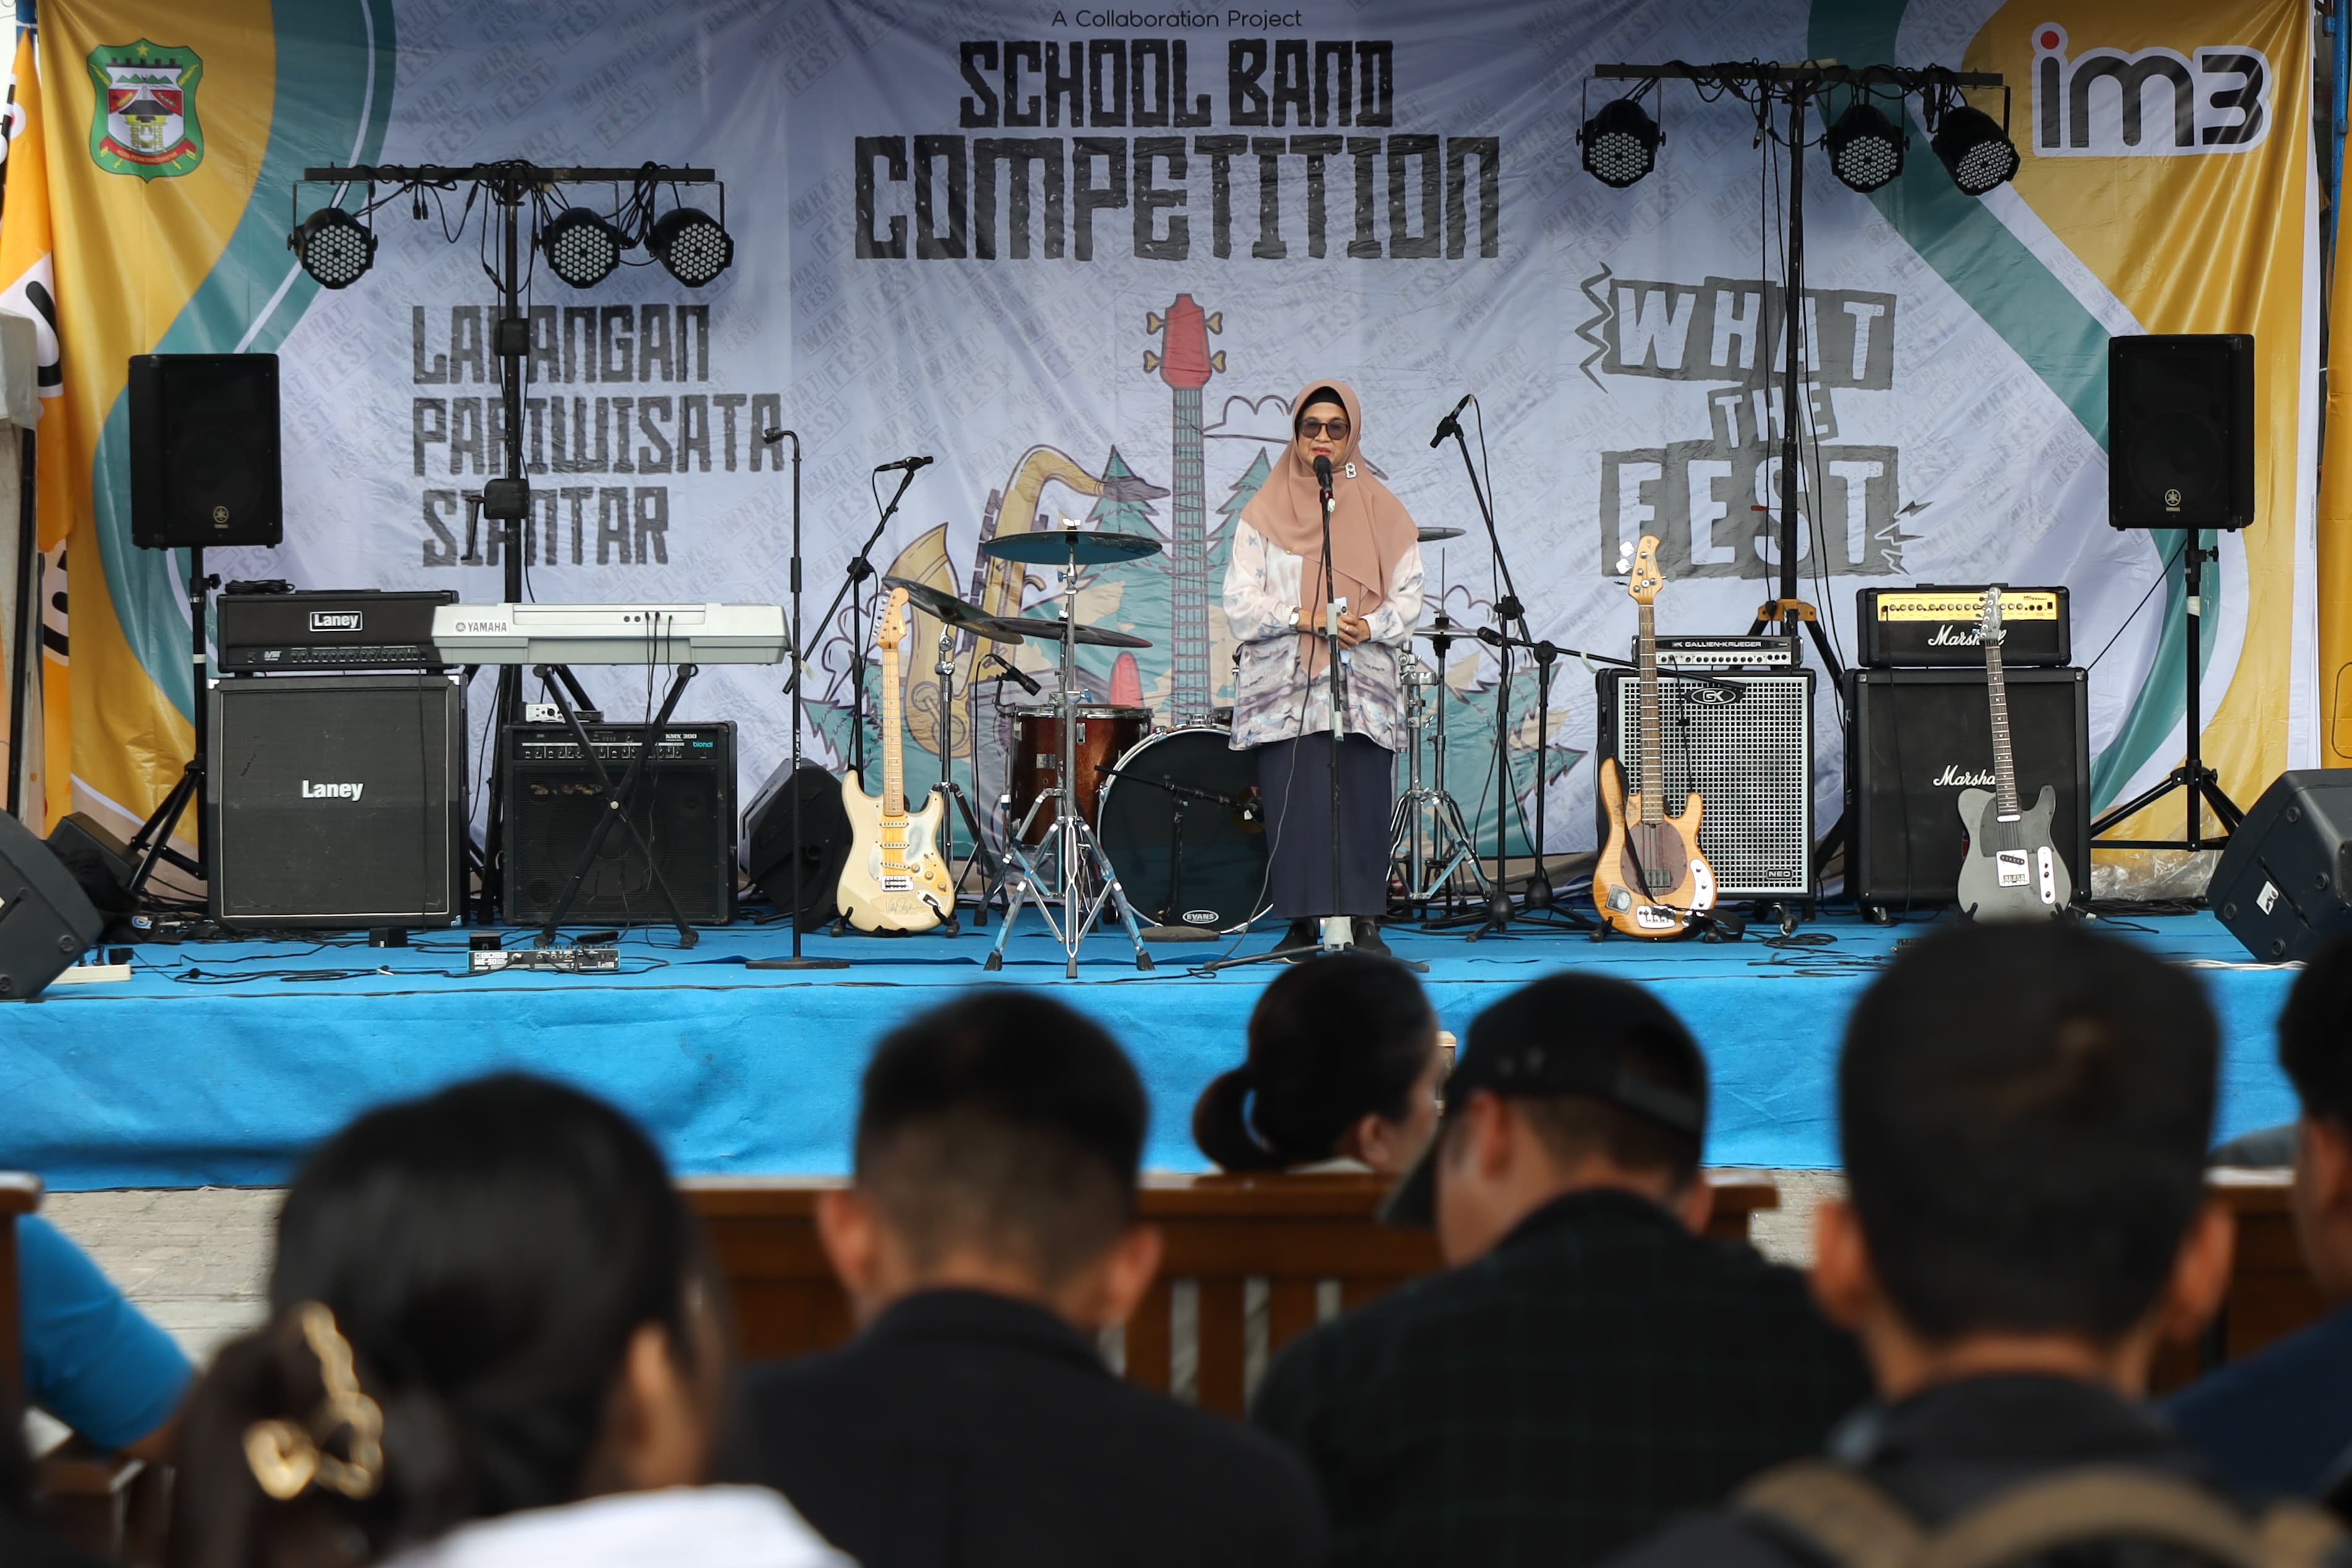 Buka School Band Competition What The Fest Siantar, Wali Kota: Saya Penikmat Seni